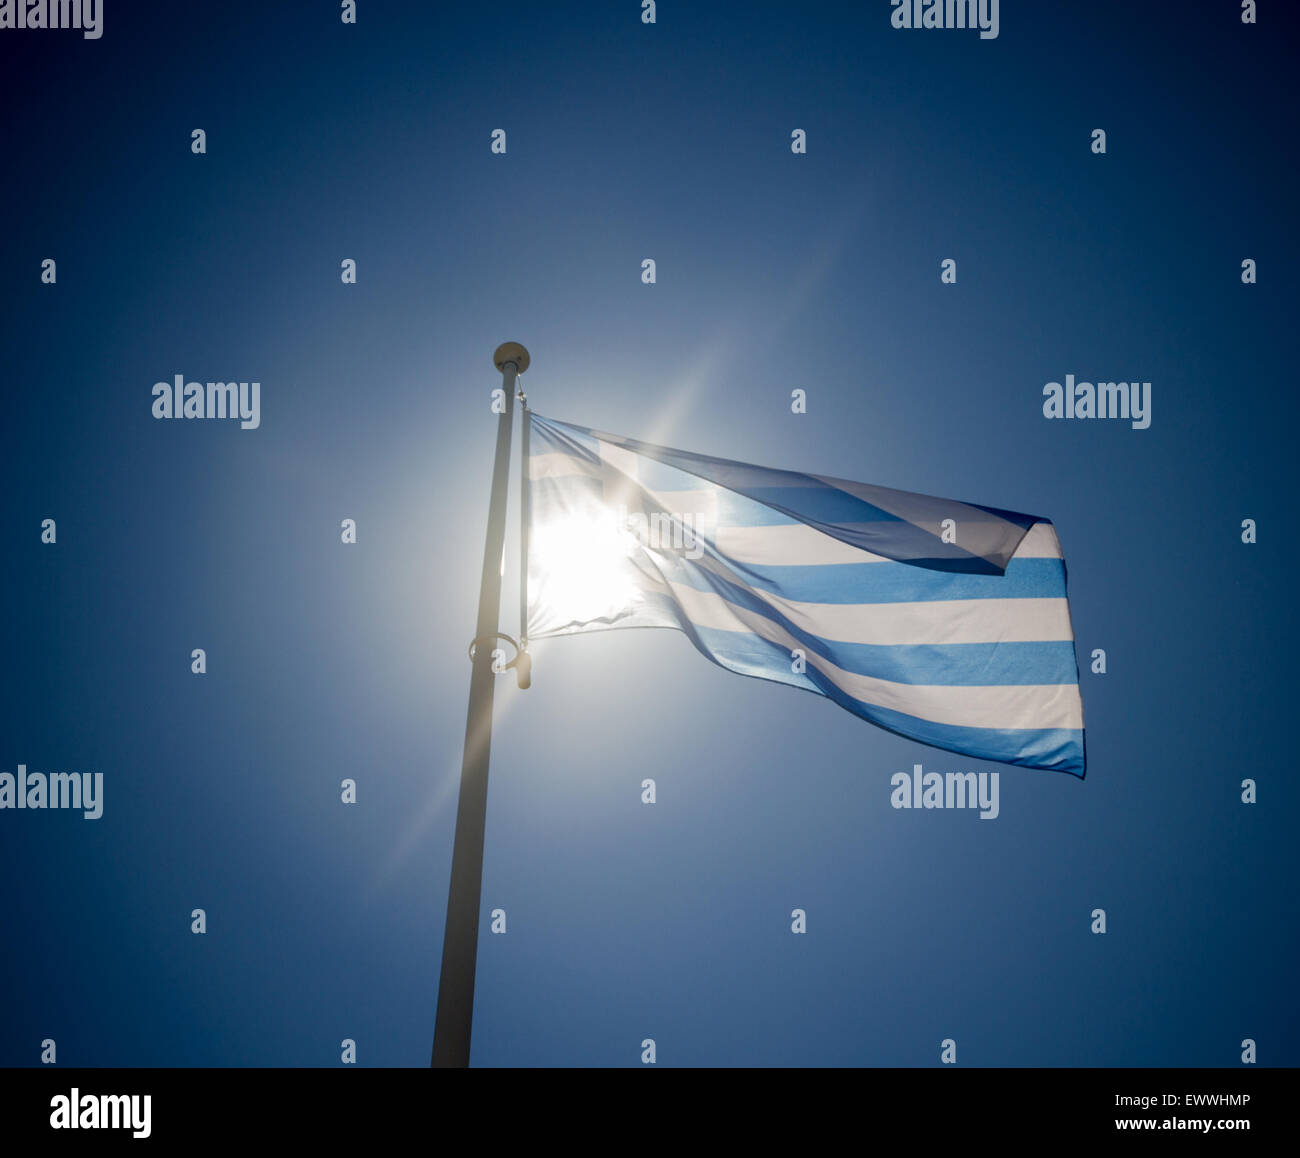 Ondear la bandera griega, antes de que el sol en el cielo azul, contre-jour retroiluminación Foto de stock